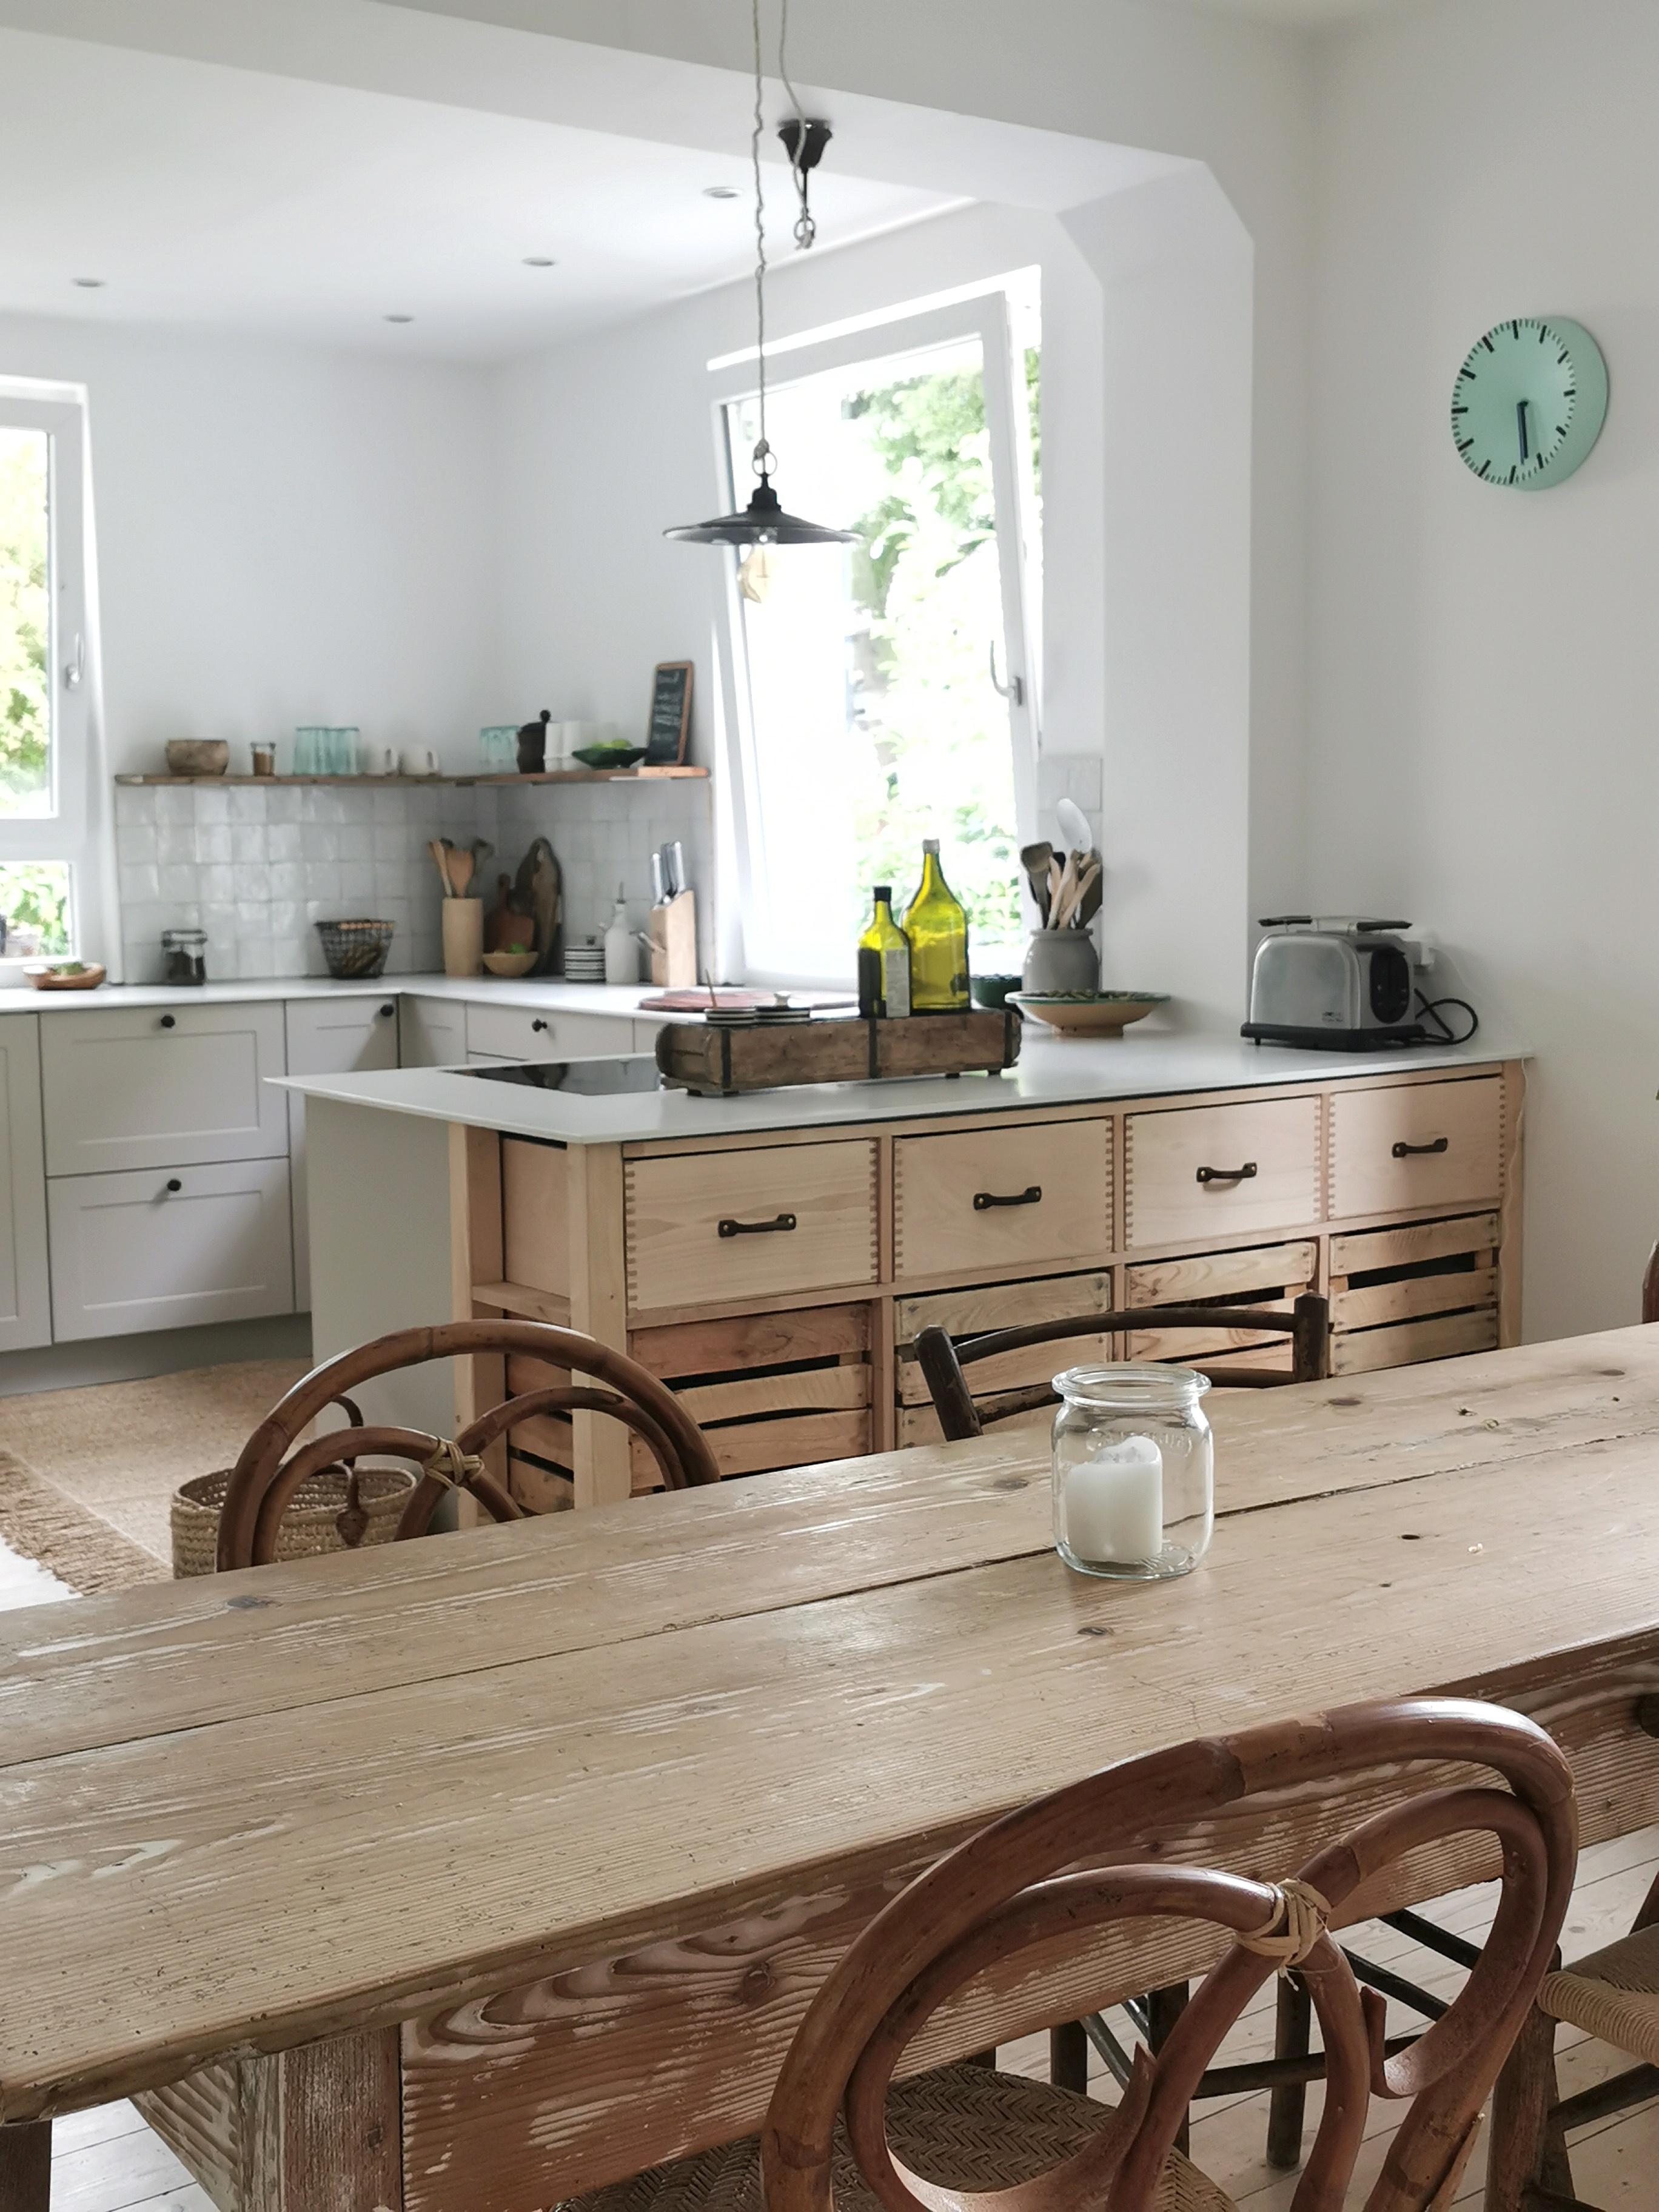 Kitchenview 💖 die #Holzkommode ist selbstgebaut 💪 love it 💕
#kücheninspo #Küche #regal